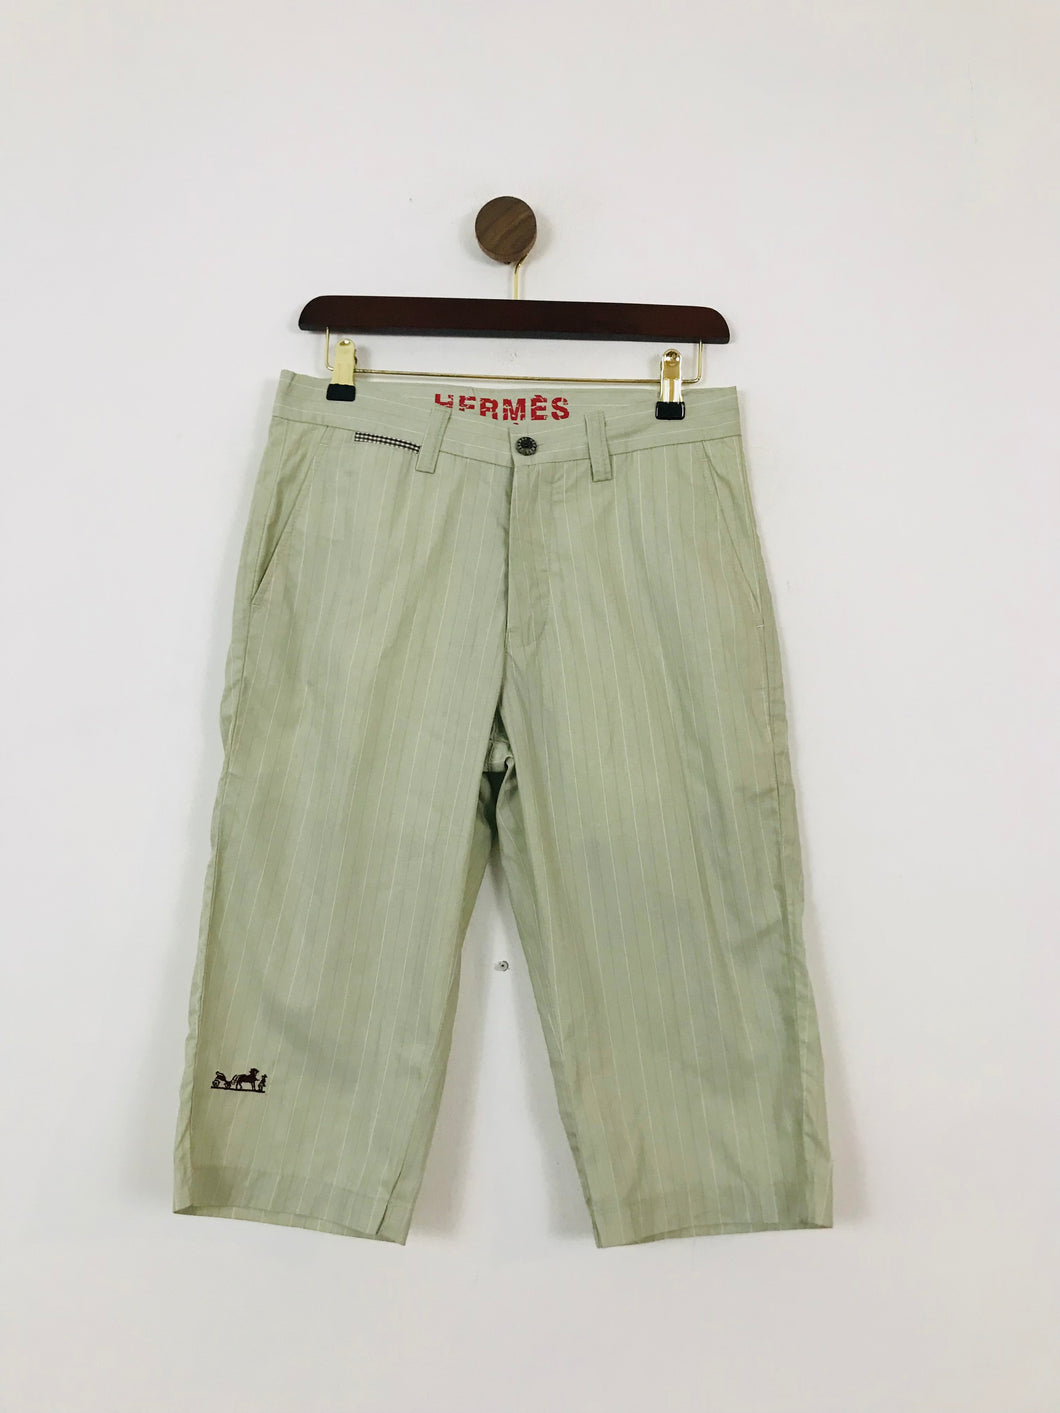 Hermès Men's Striped Mid-Length Shorts | 29 | Green